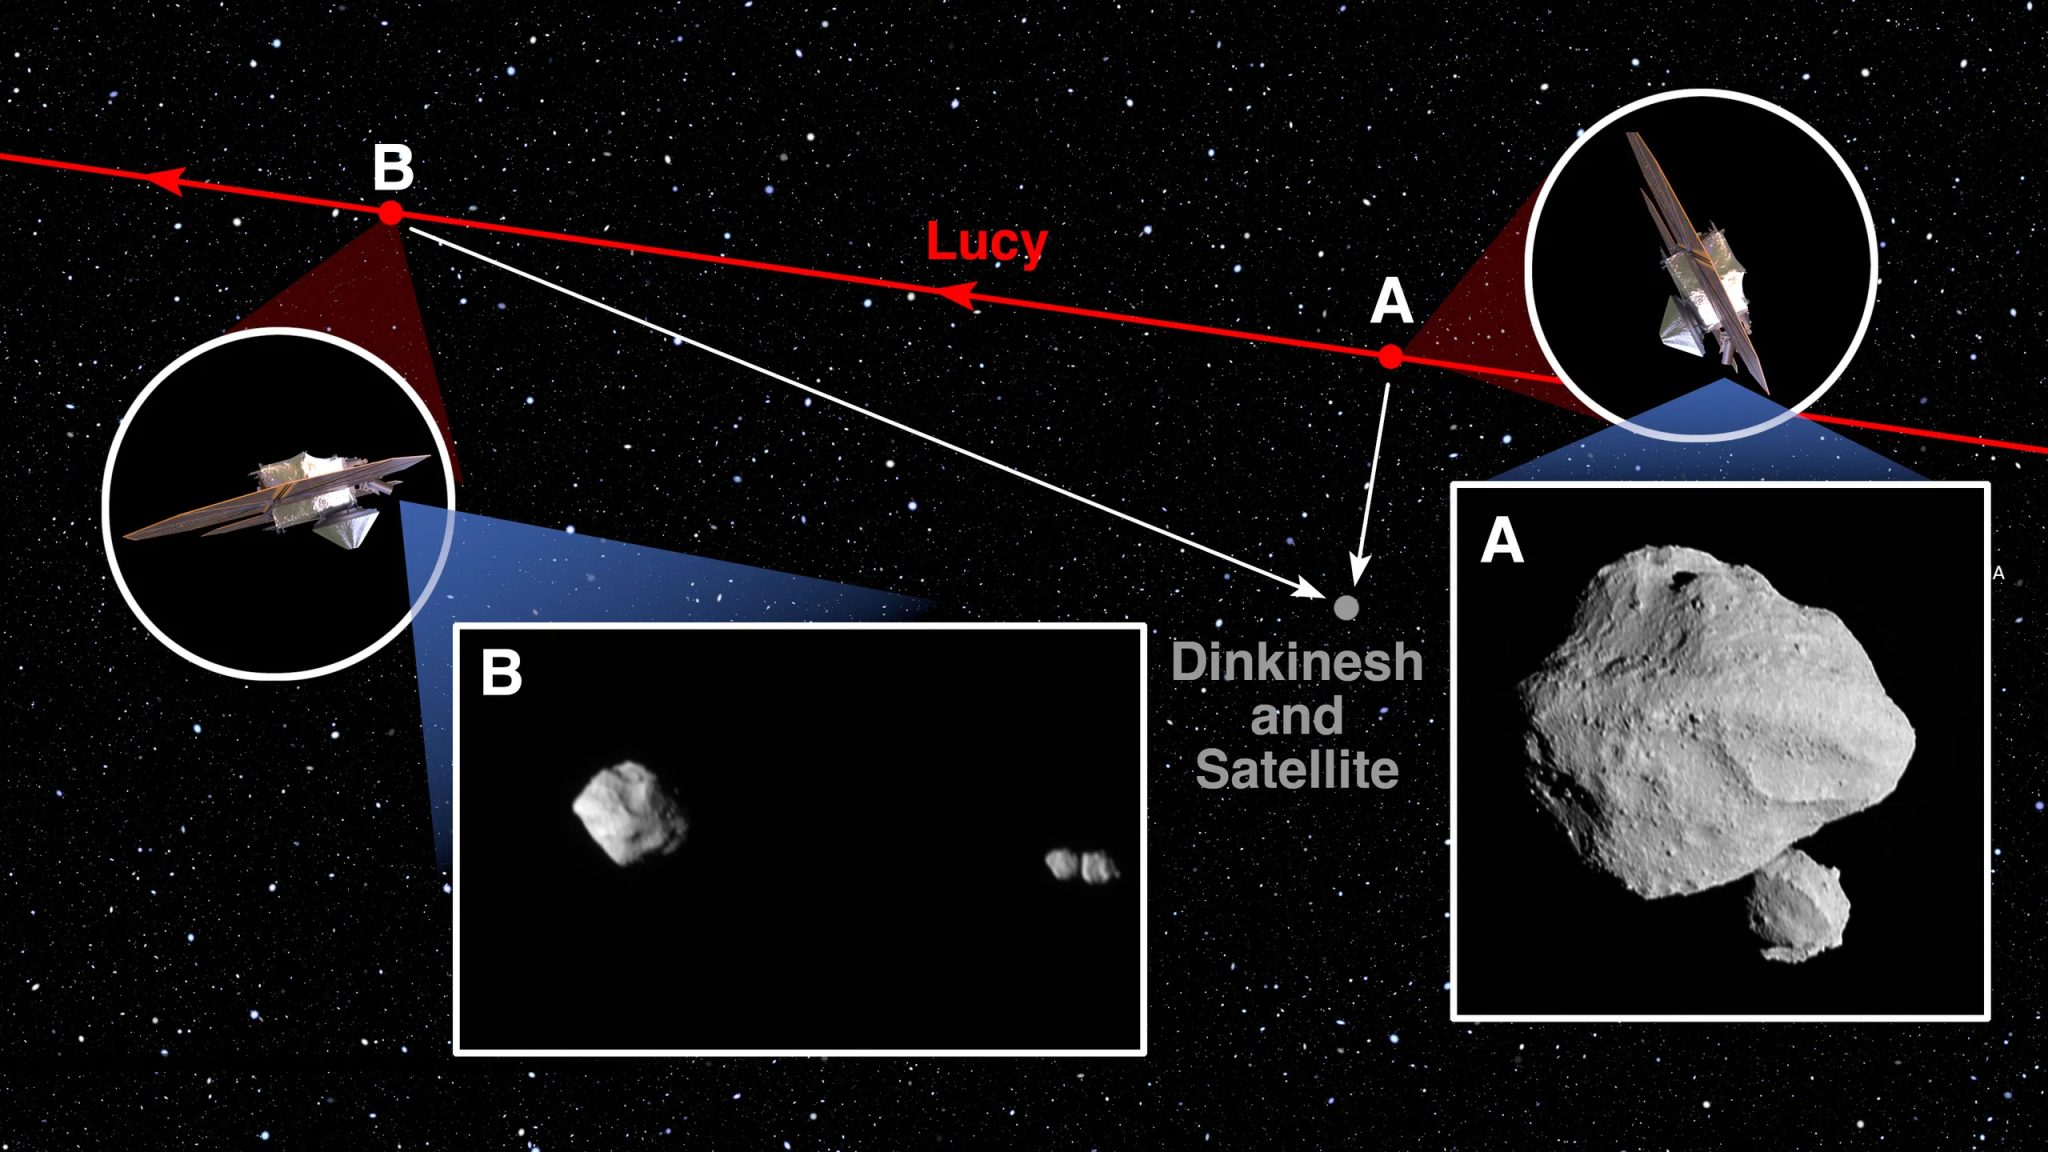 مركبة لوسي الفضائية التابعة لناسا أثناء تحليقها بالقرب من الكويكب دينجينيش